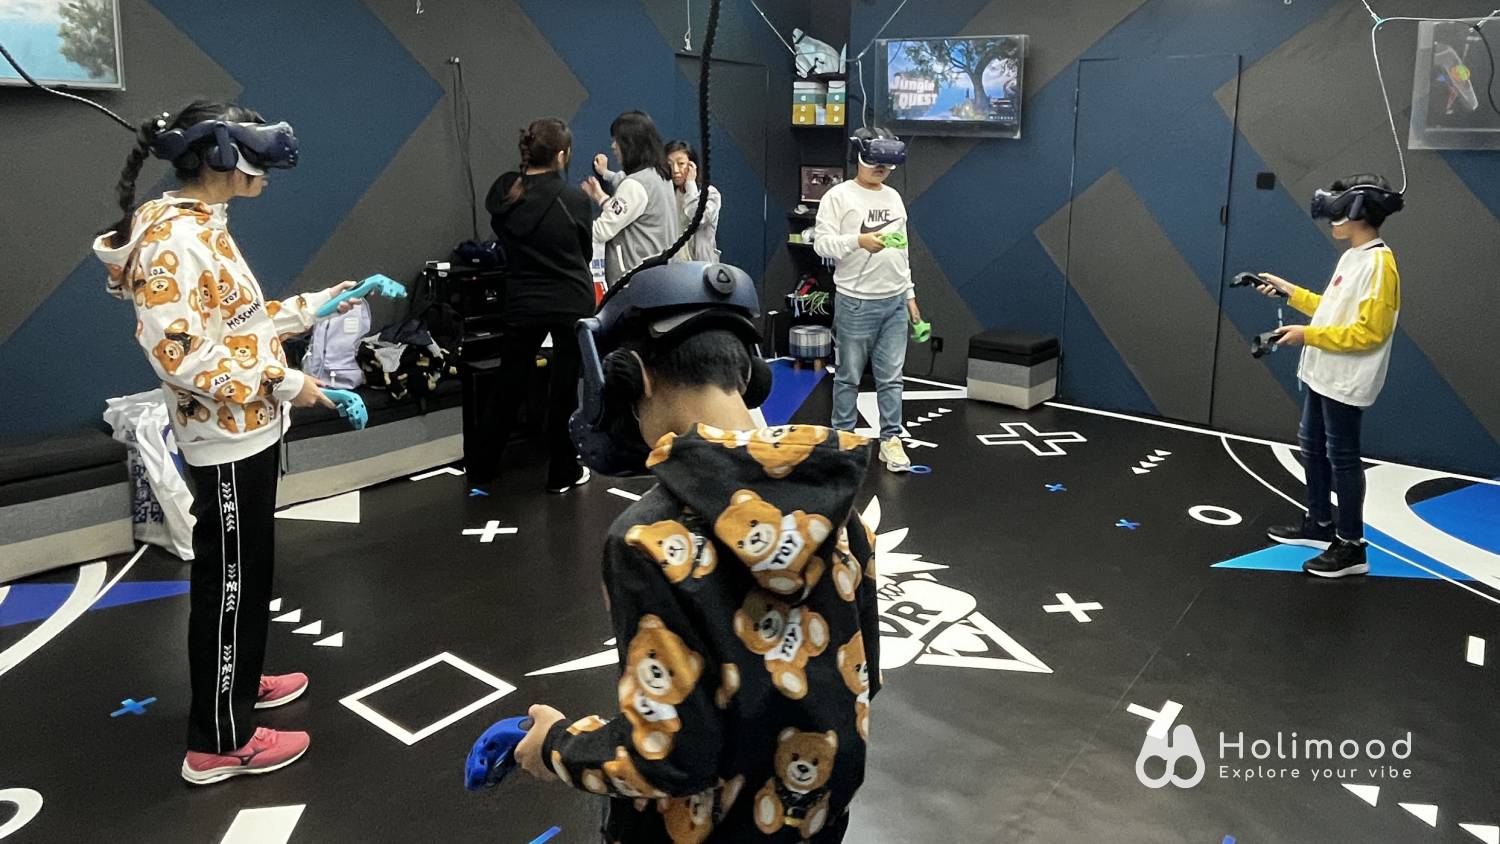 V-Owl Station VR Party 虛擬實境體驗站 【VR體驗】90分鐘特選VR故事遊戲 (送4D動感太空艙體驗) 10